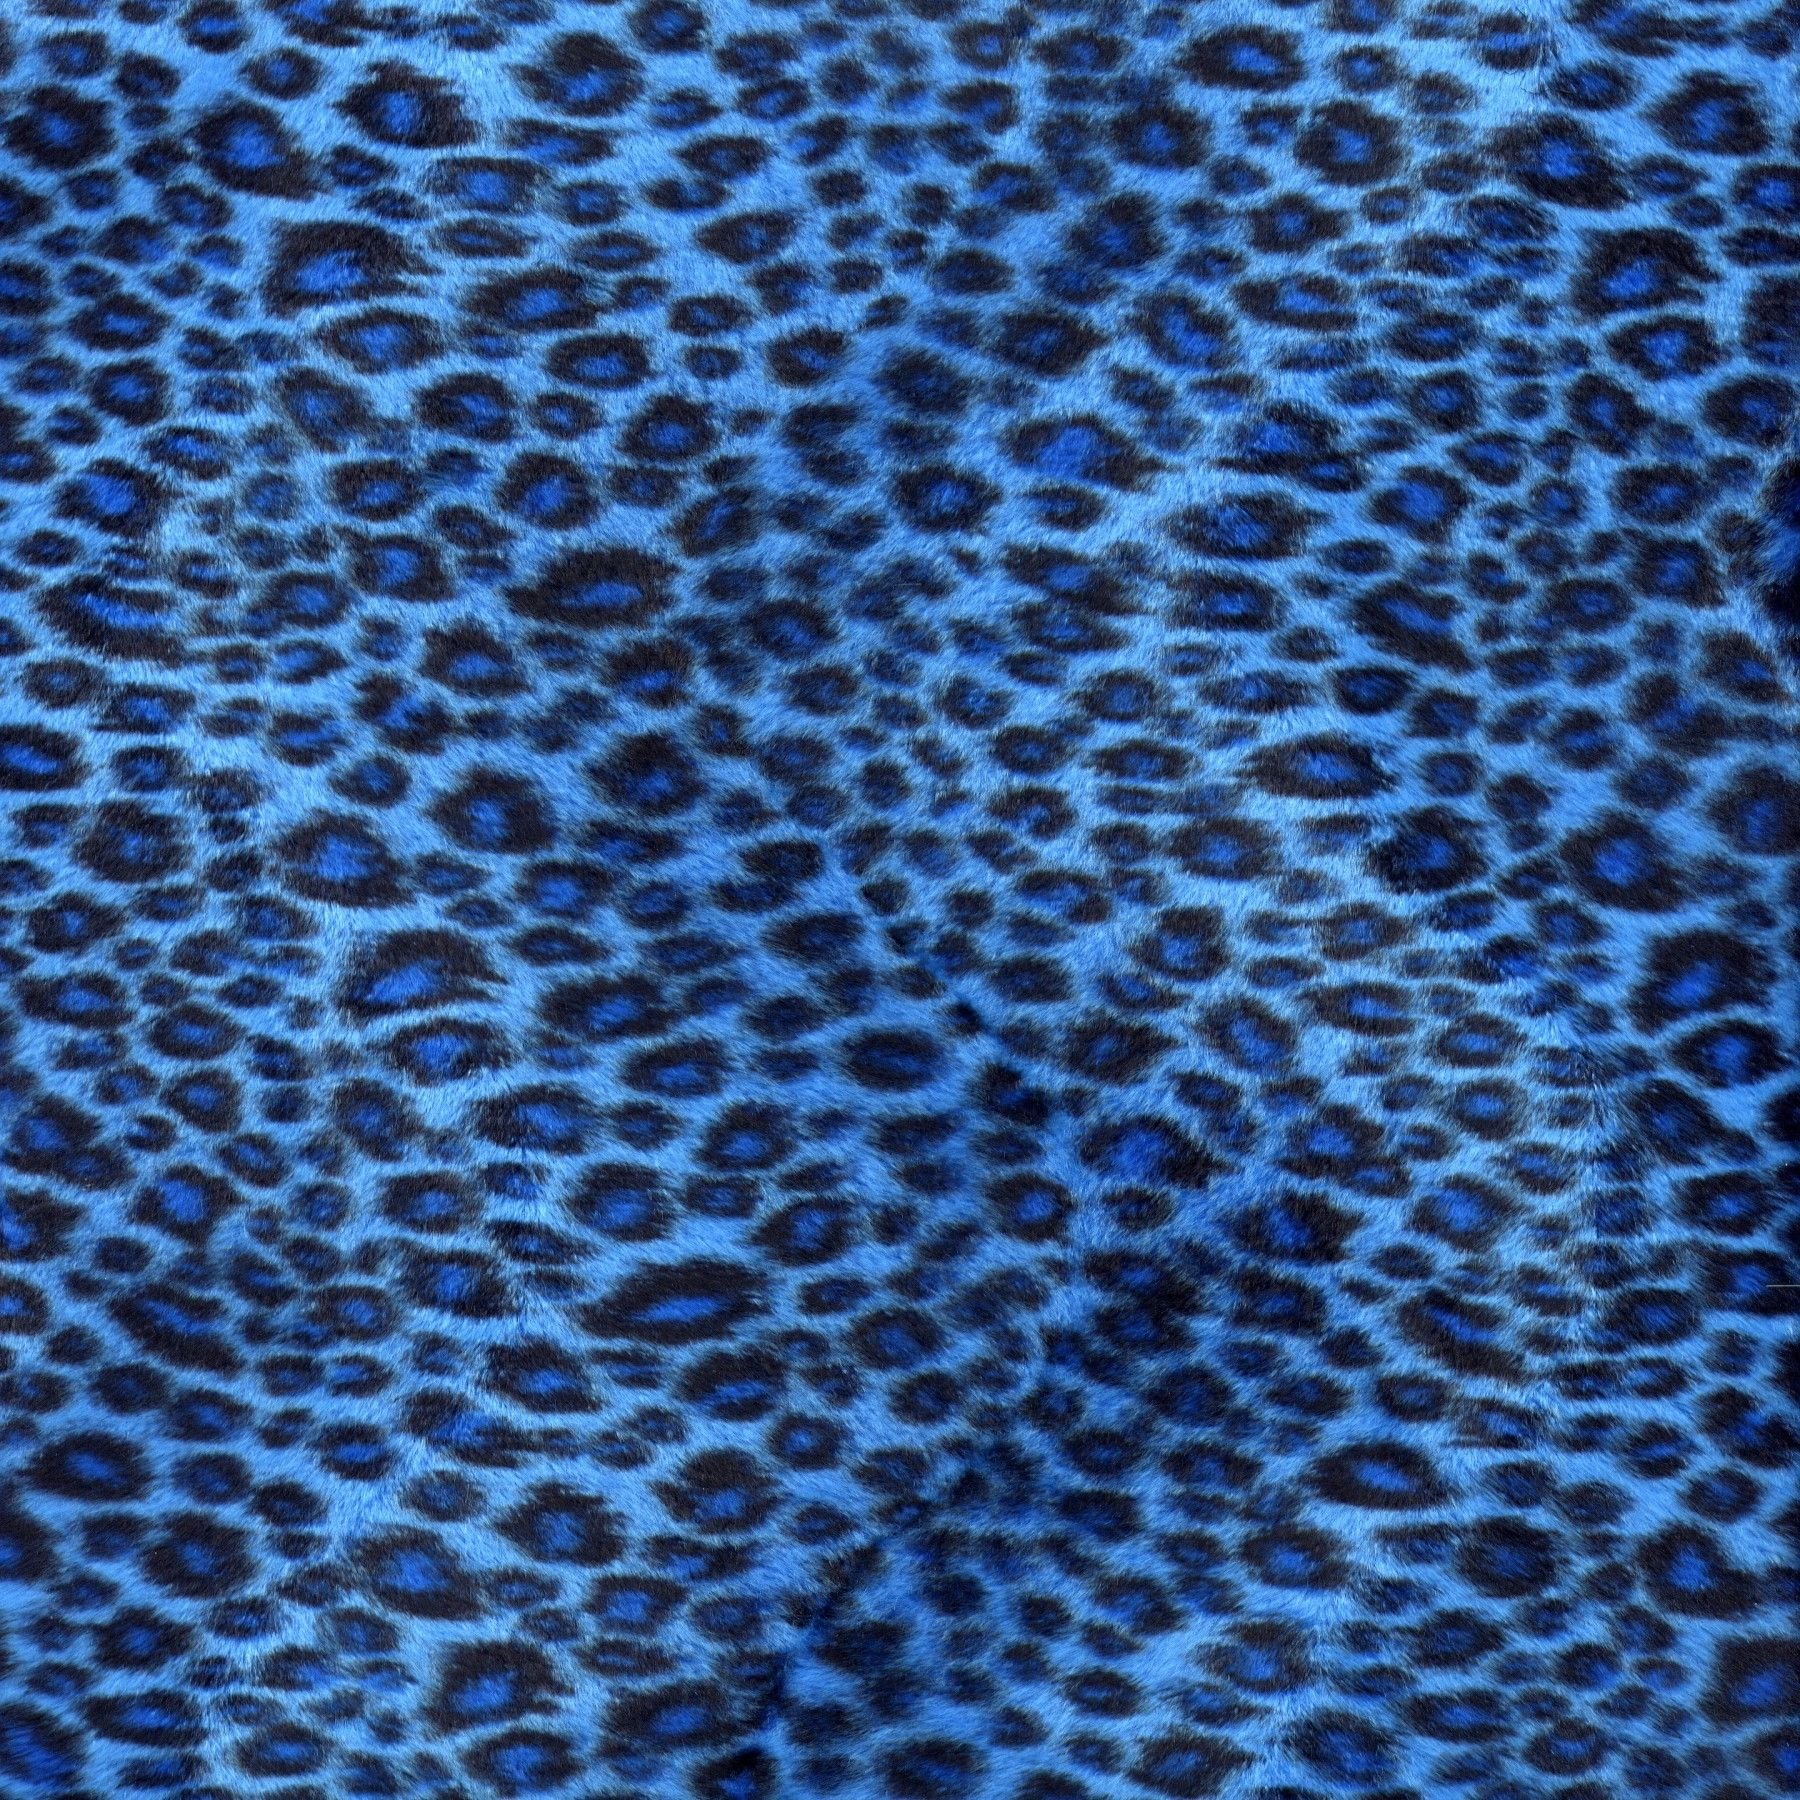 leopard print 1800x1800 wallpaper High Quality Wallpaper, High Definition Wallpaper